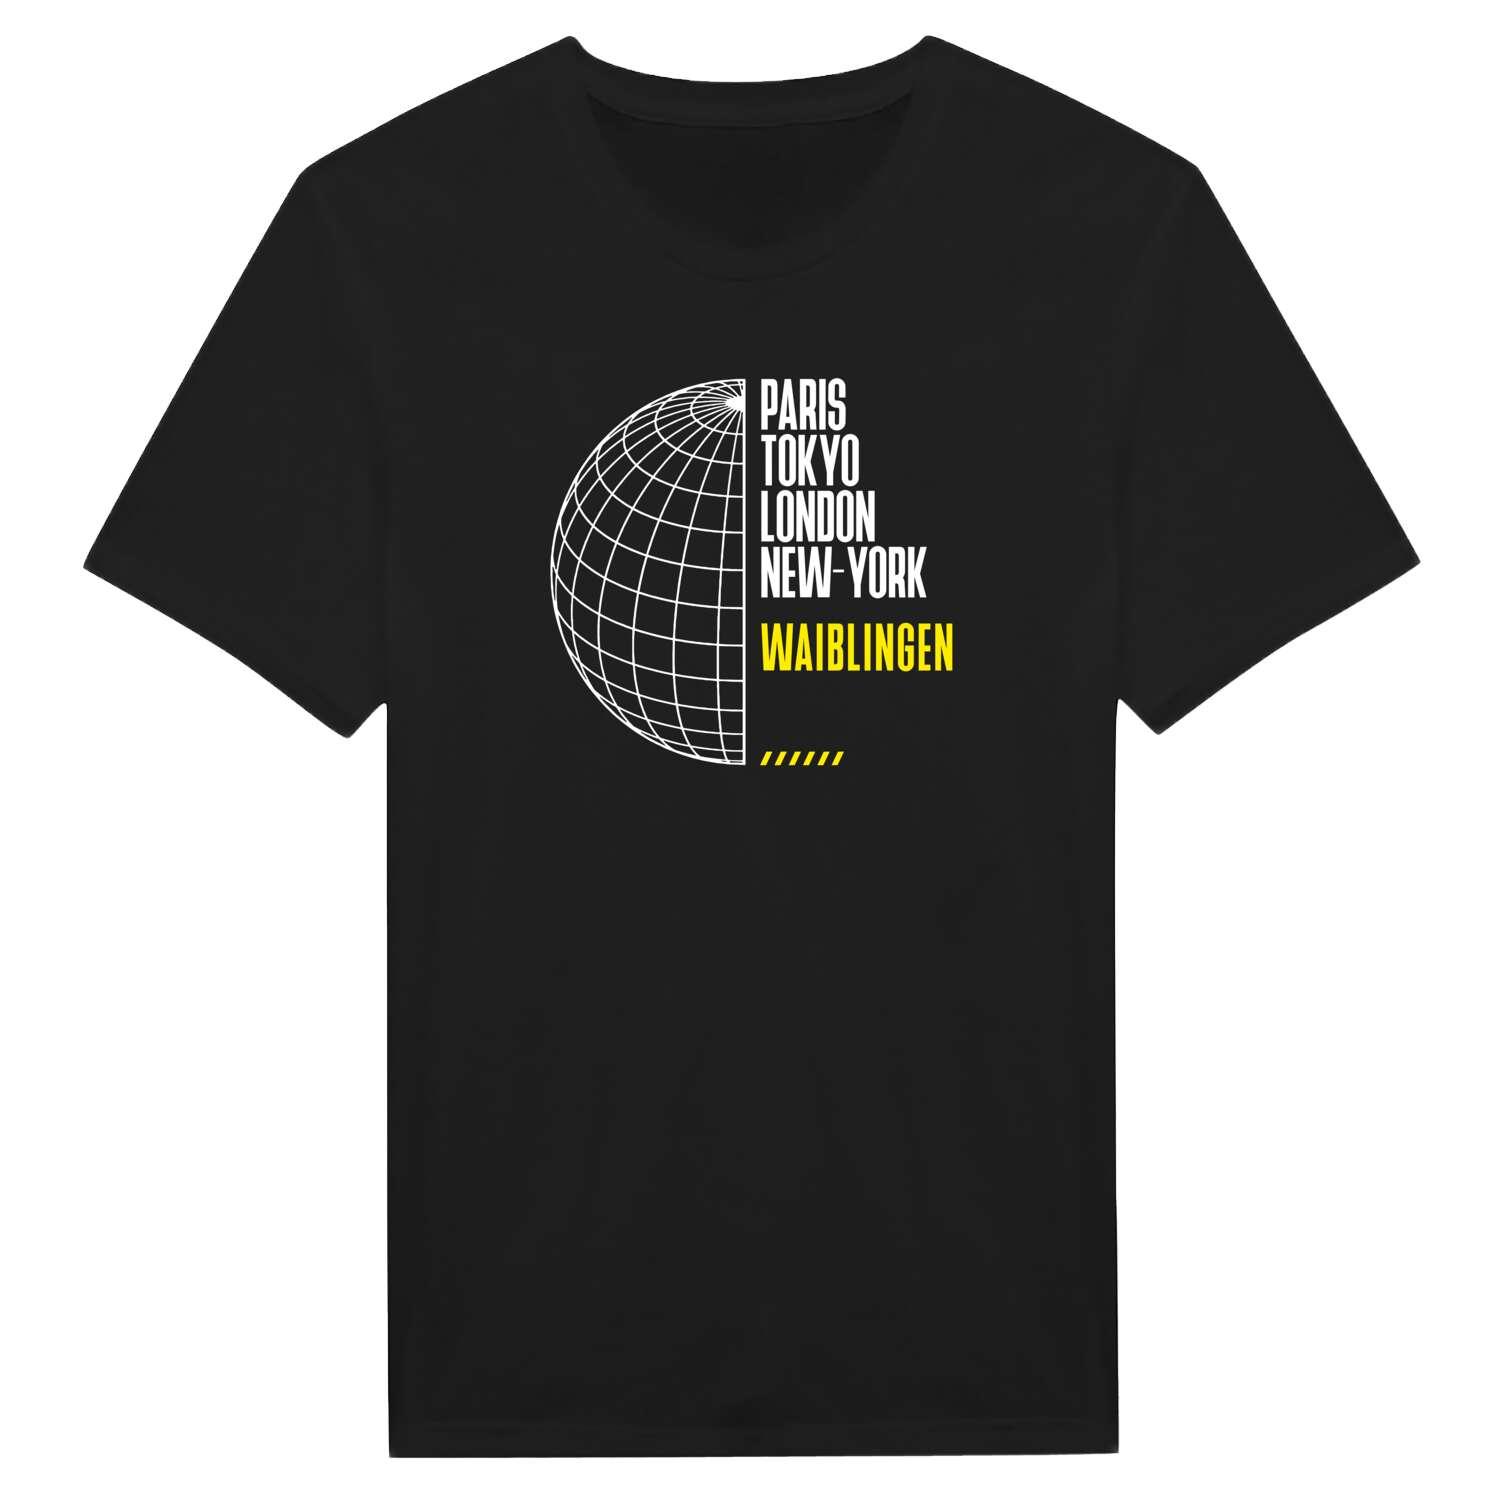 Waiblingen T-Shirt »Paris Tokyo London«